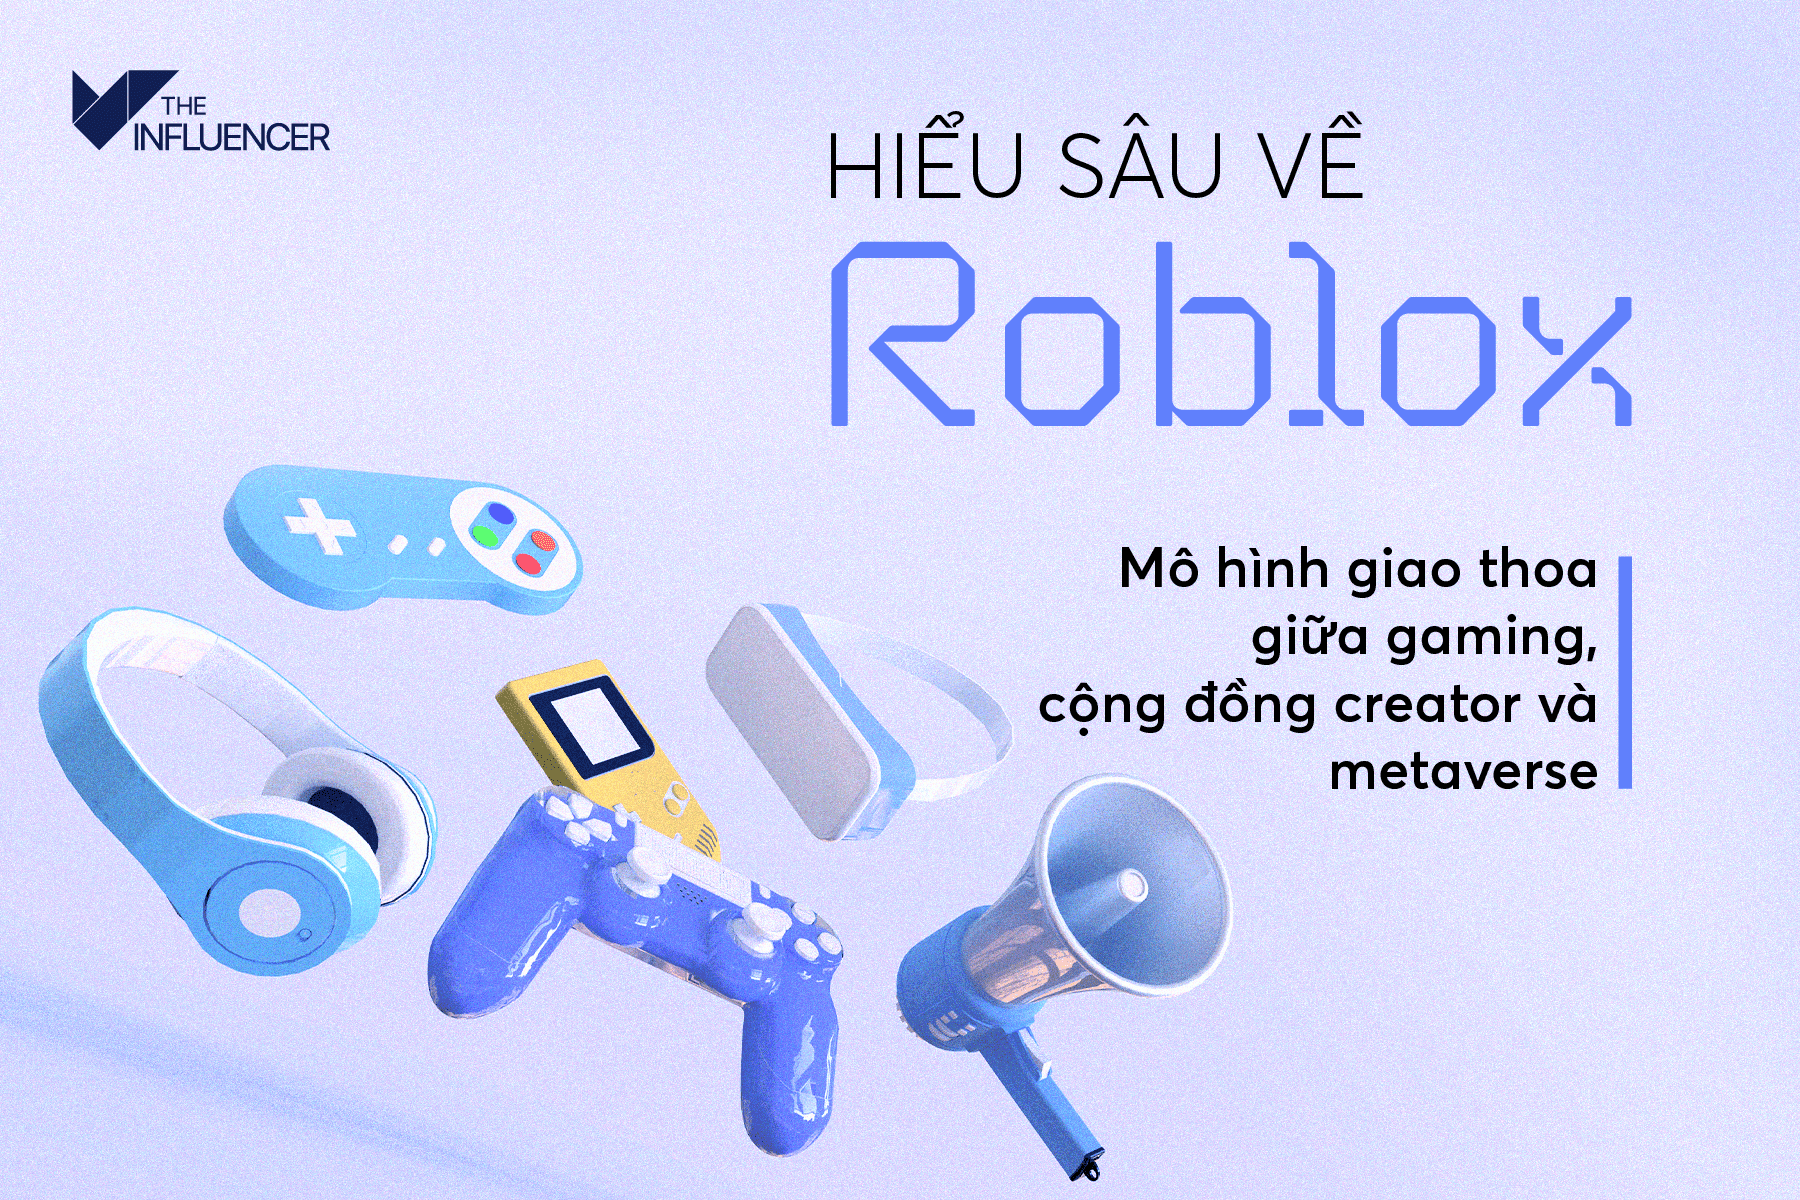 Hiểu sâu về Roblox: Mô hình giao thoa giữa gaming, cộng đồng creator và metaverse